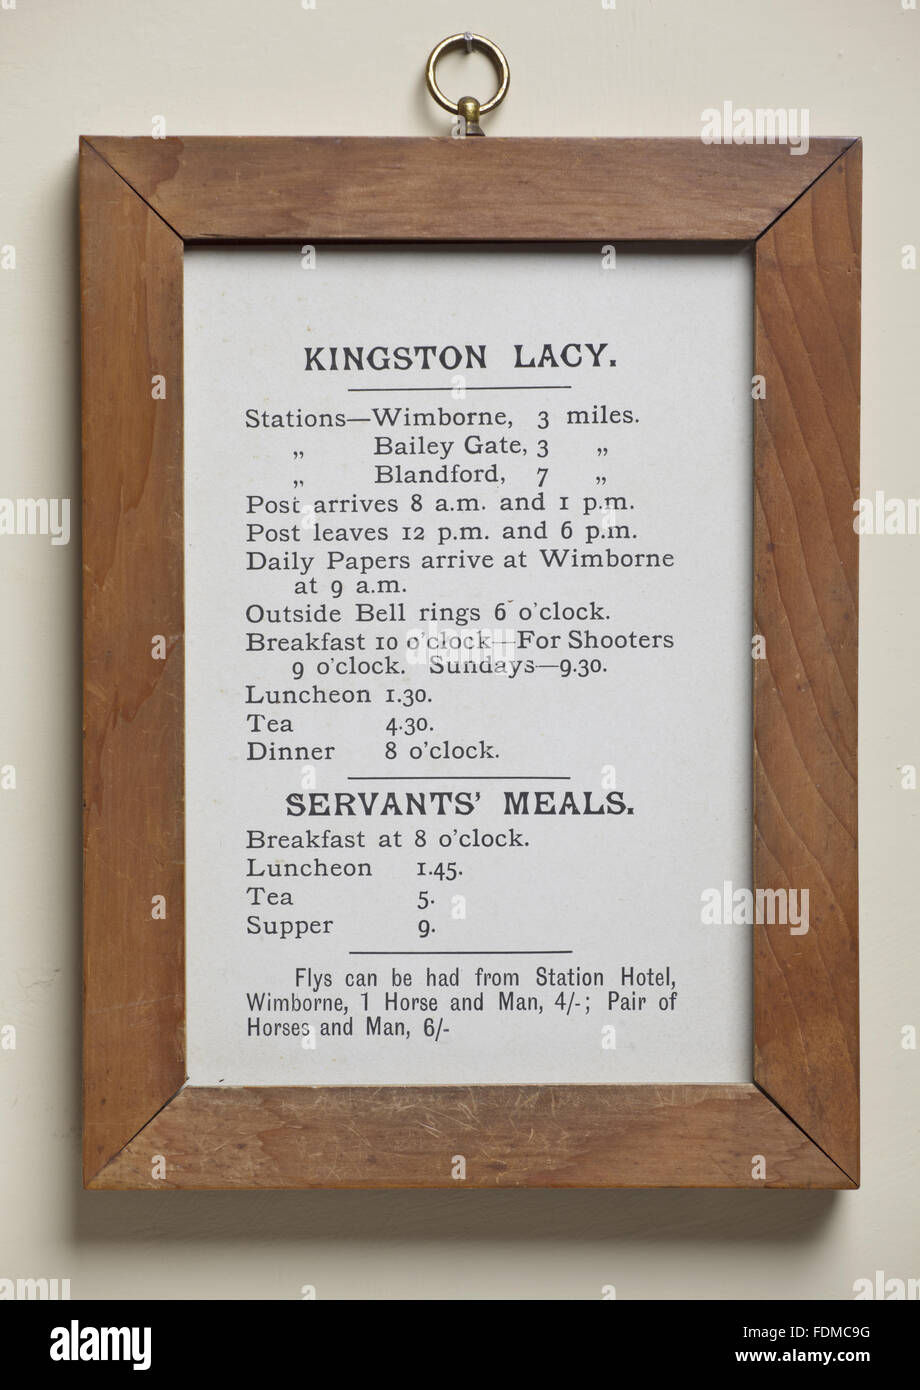 Ein gerahmtes Dokument mit den Anweisungen und Regeln des Hauses an Kingston Lacy, Dorset. Stockfoto